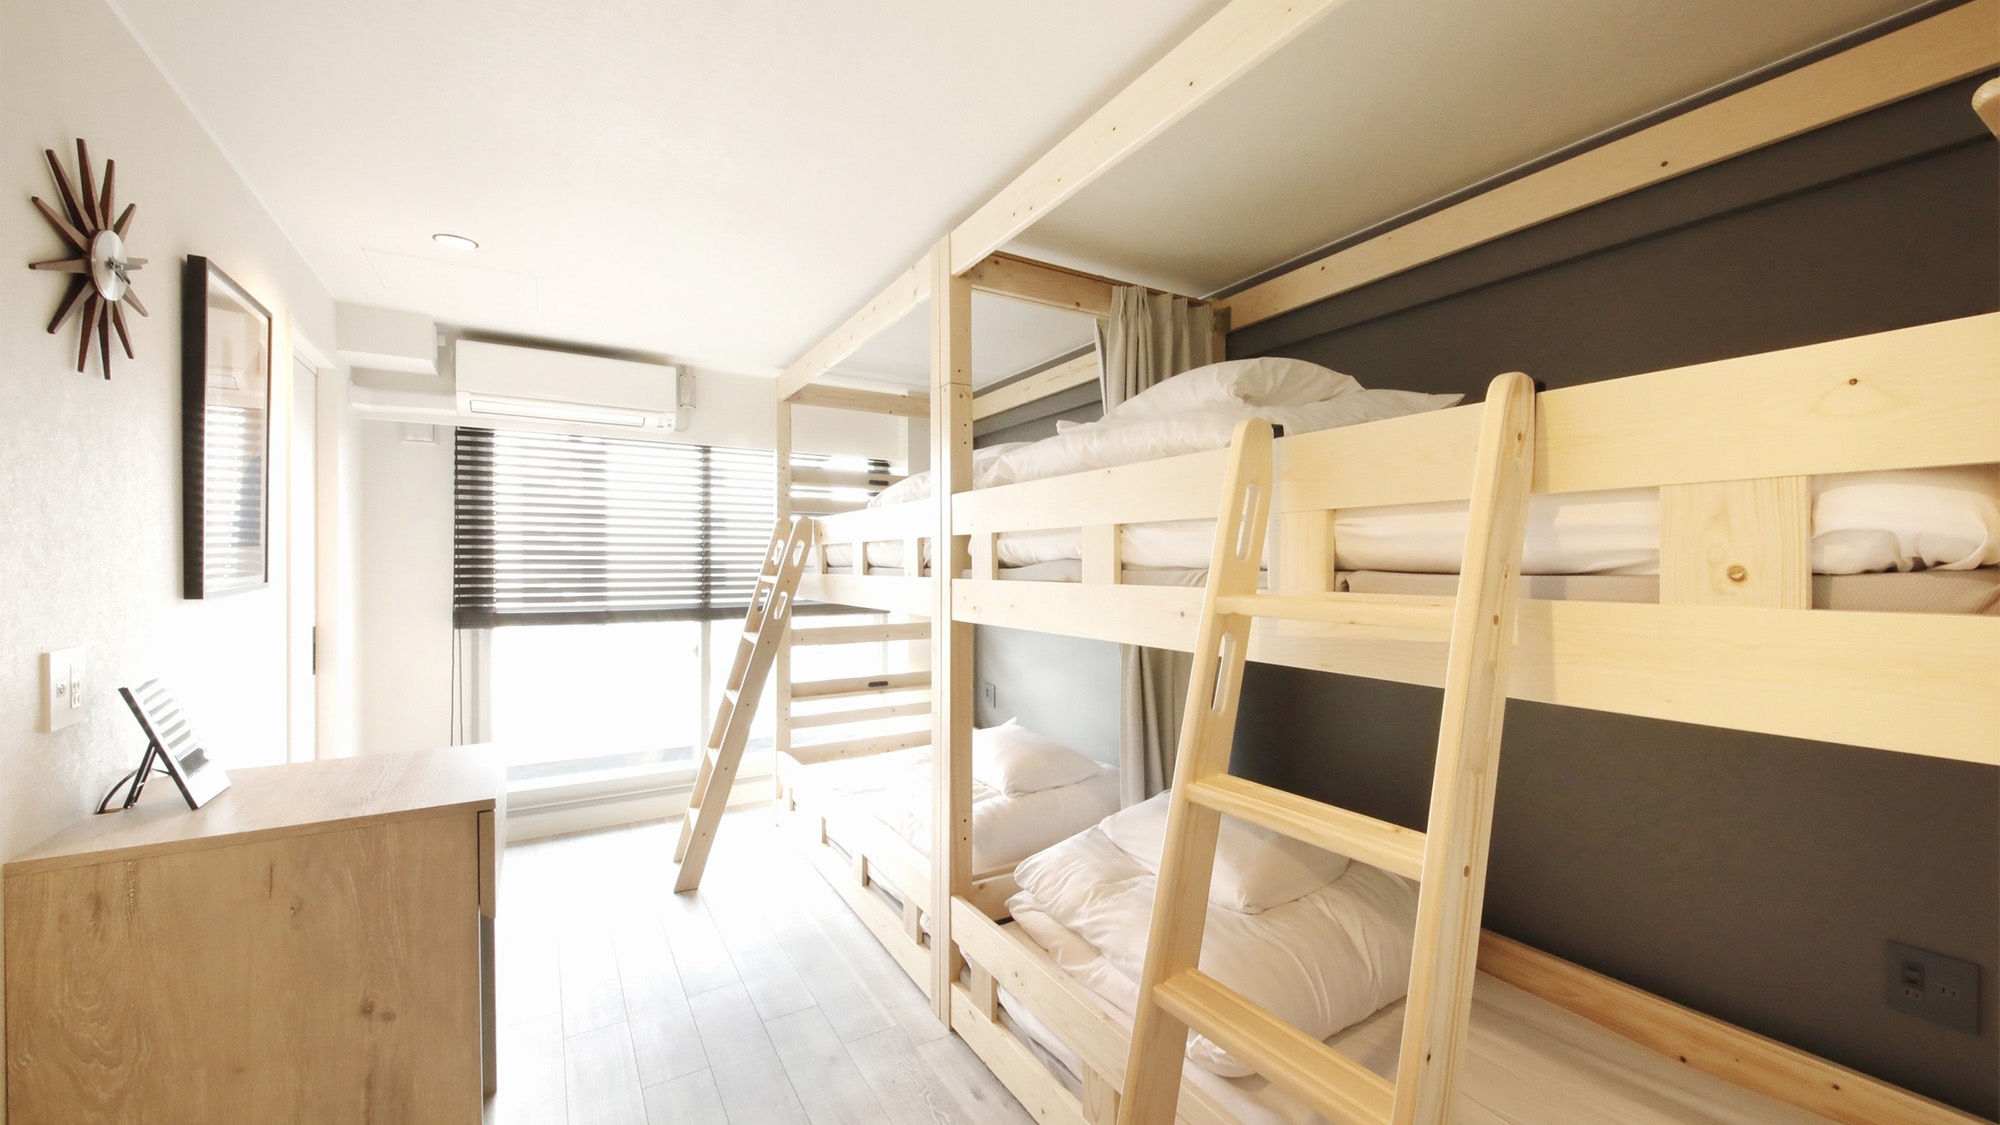 ★夏休みも対象★宿泊費を抑えて札幌を満喫したい方へ♪ファミリーに人気の2段ベッドルーム